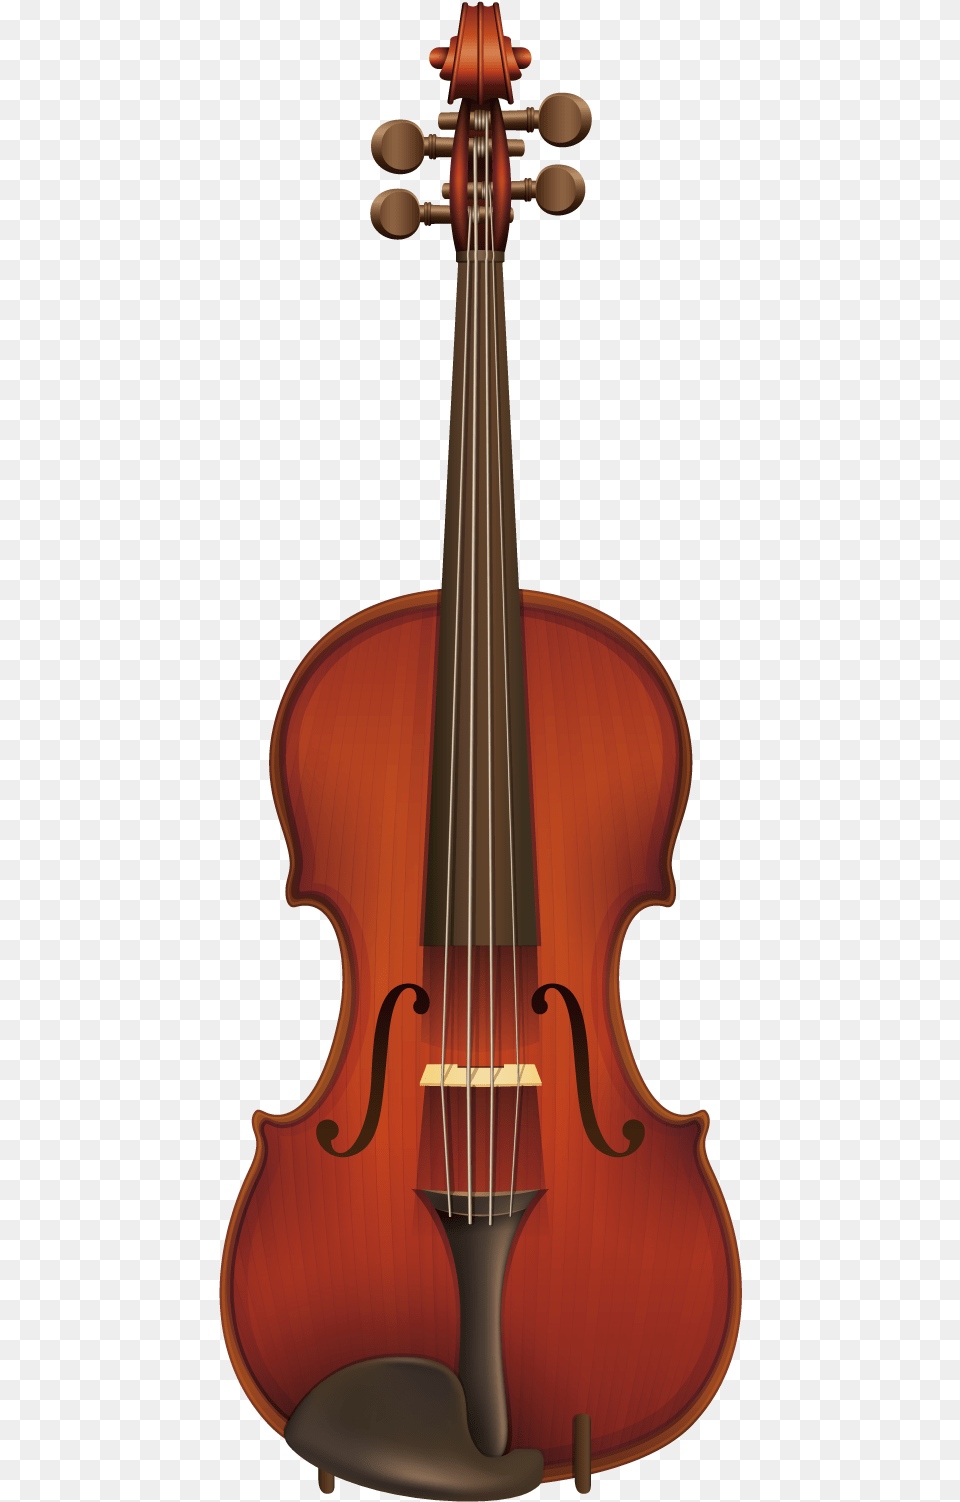 Ukulele Musical Instrument Violin Viola Violon 4, Musical Instrument, Guitar Png Image